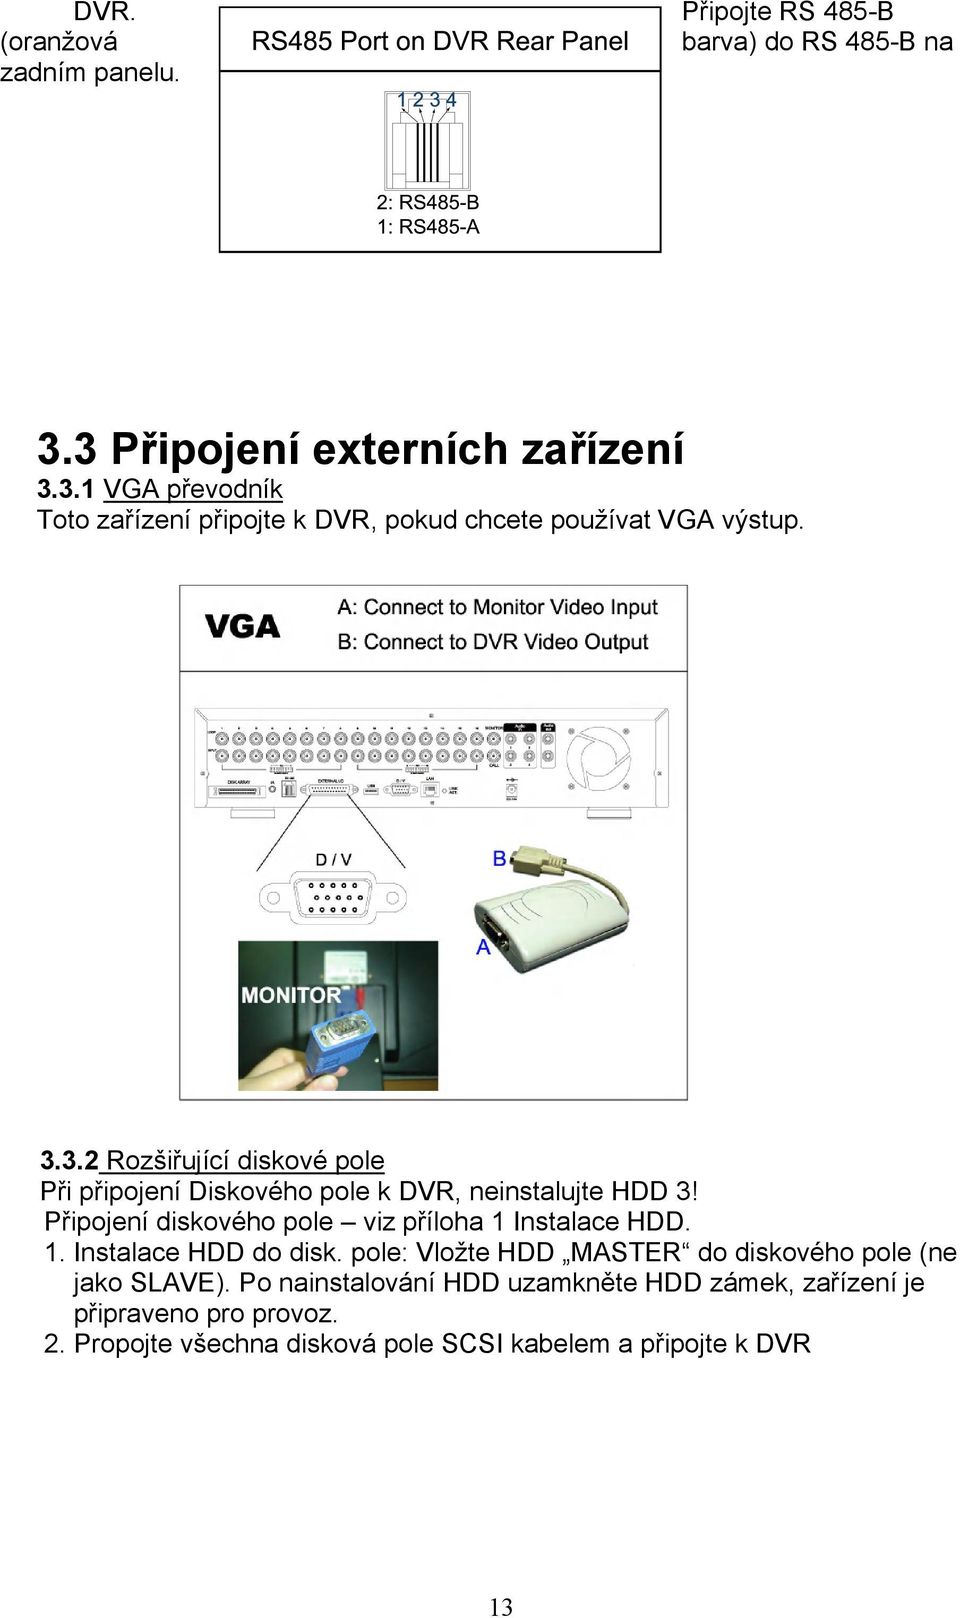 Připojení diskového pole viz příloha 1 Instalace HDD. 1. Instalace HDD do disk. pole: Vložte HDD MASTER do diskového pole (ne jako SLAVE).